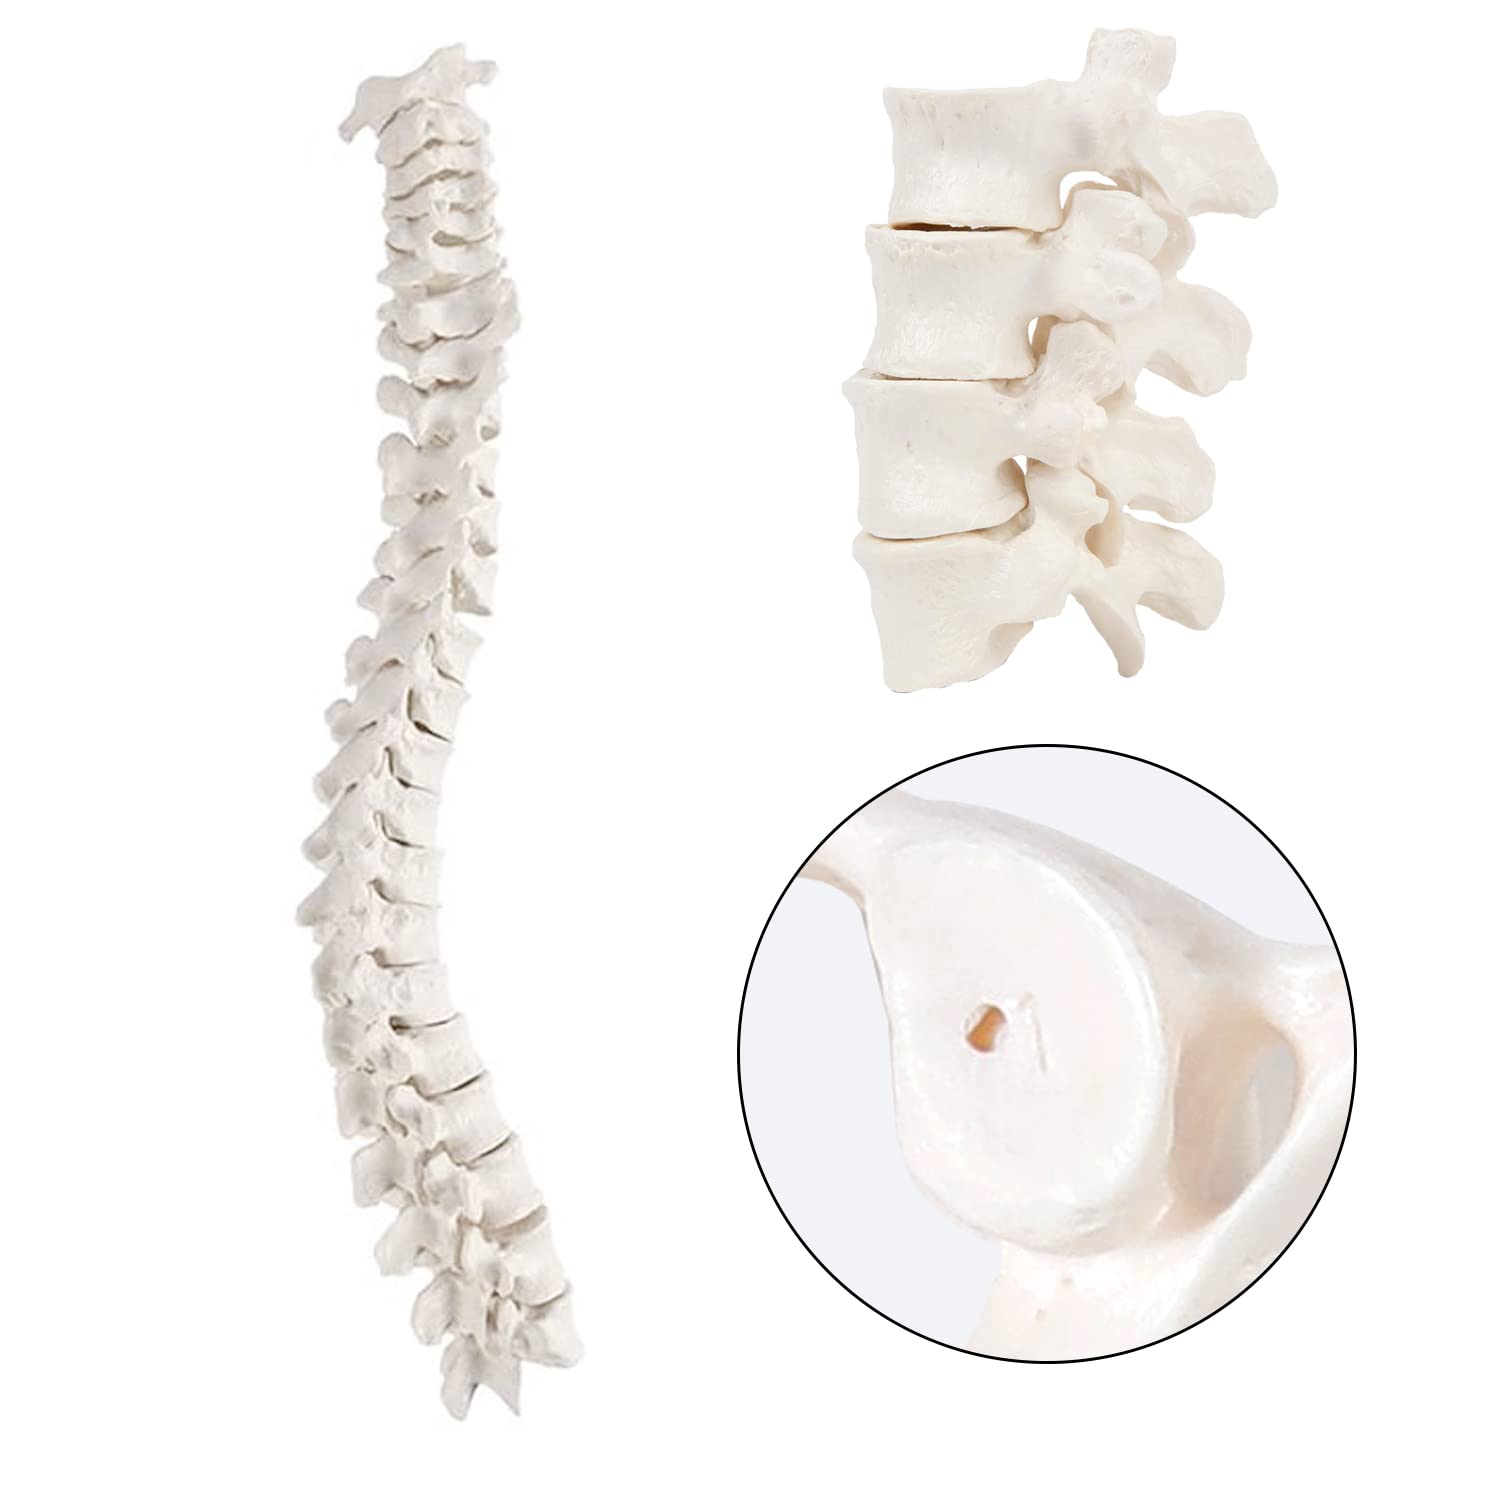 spine model